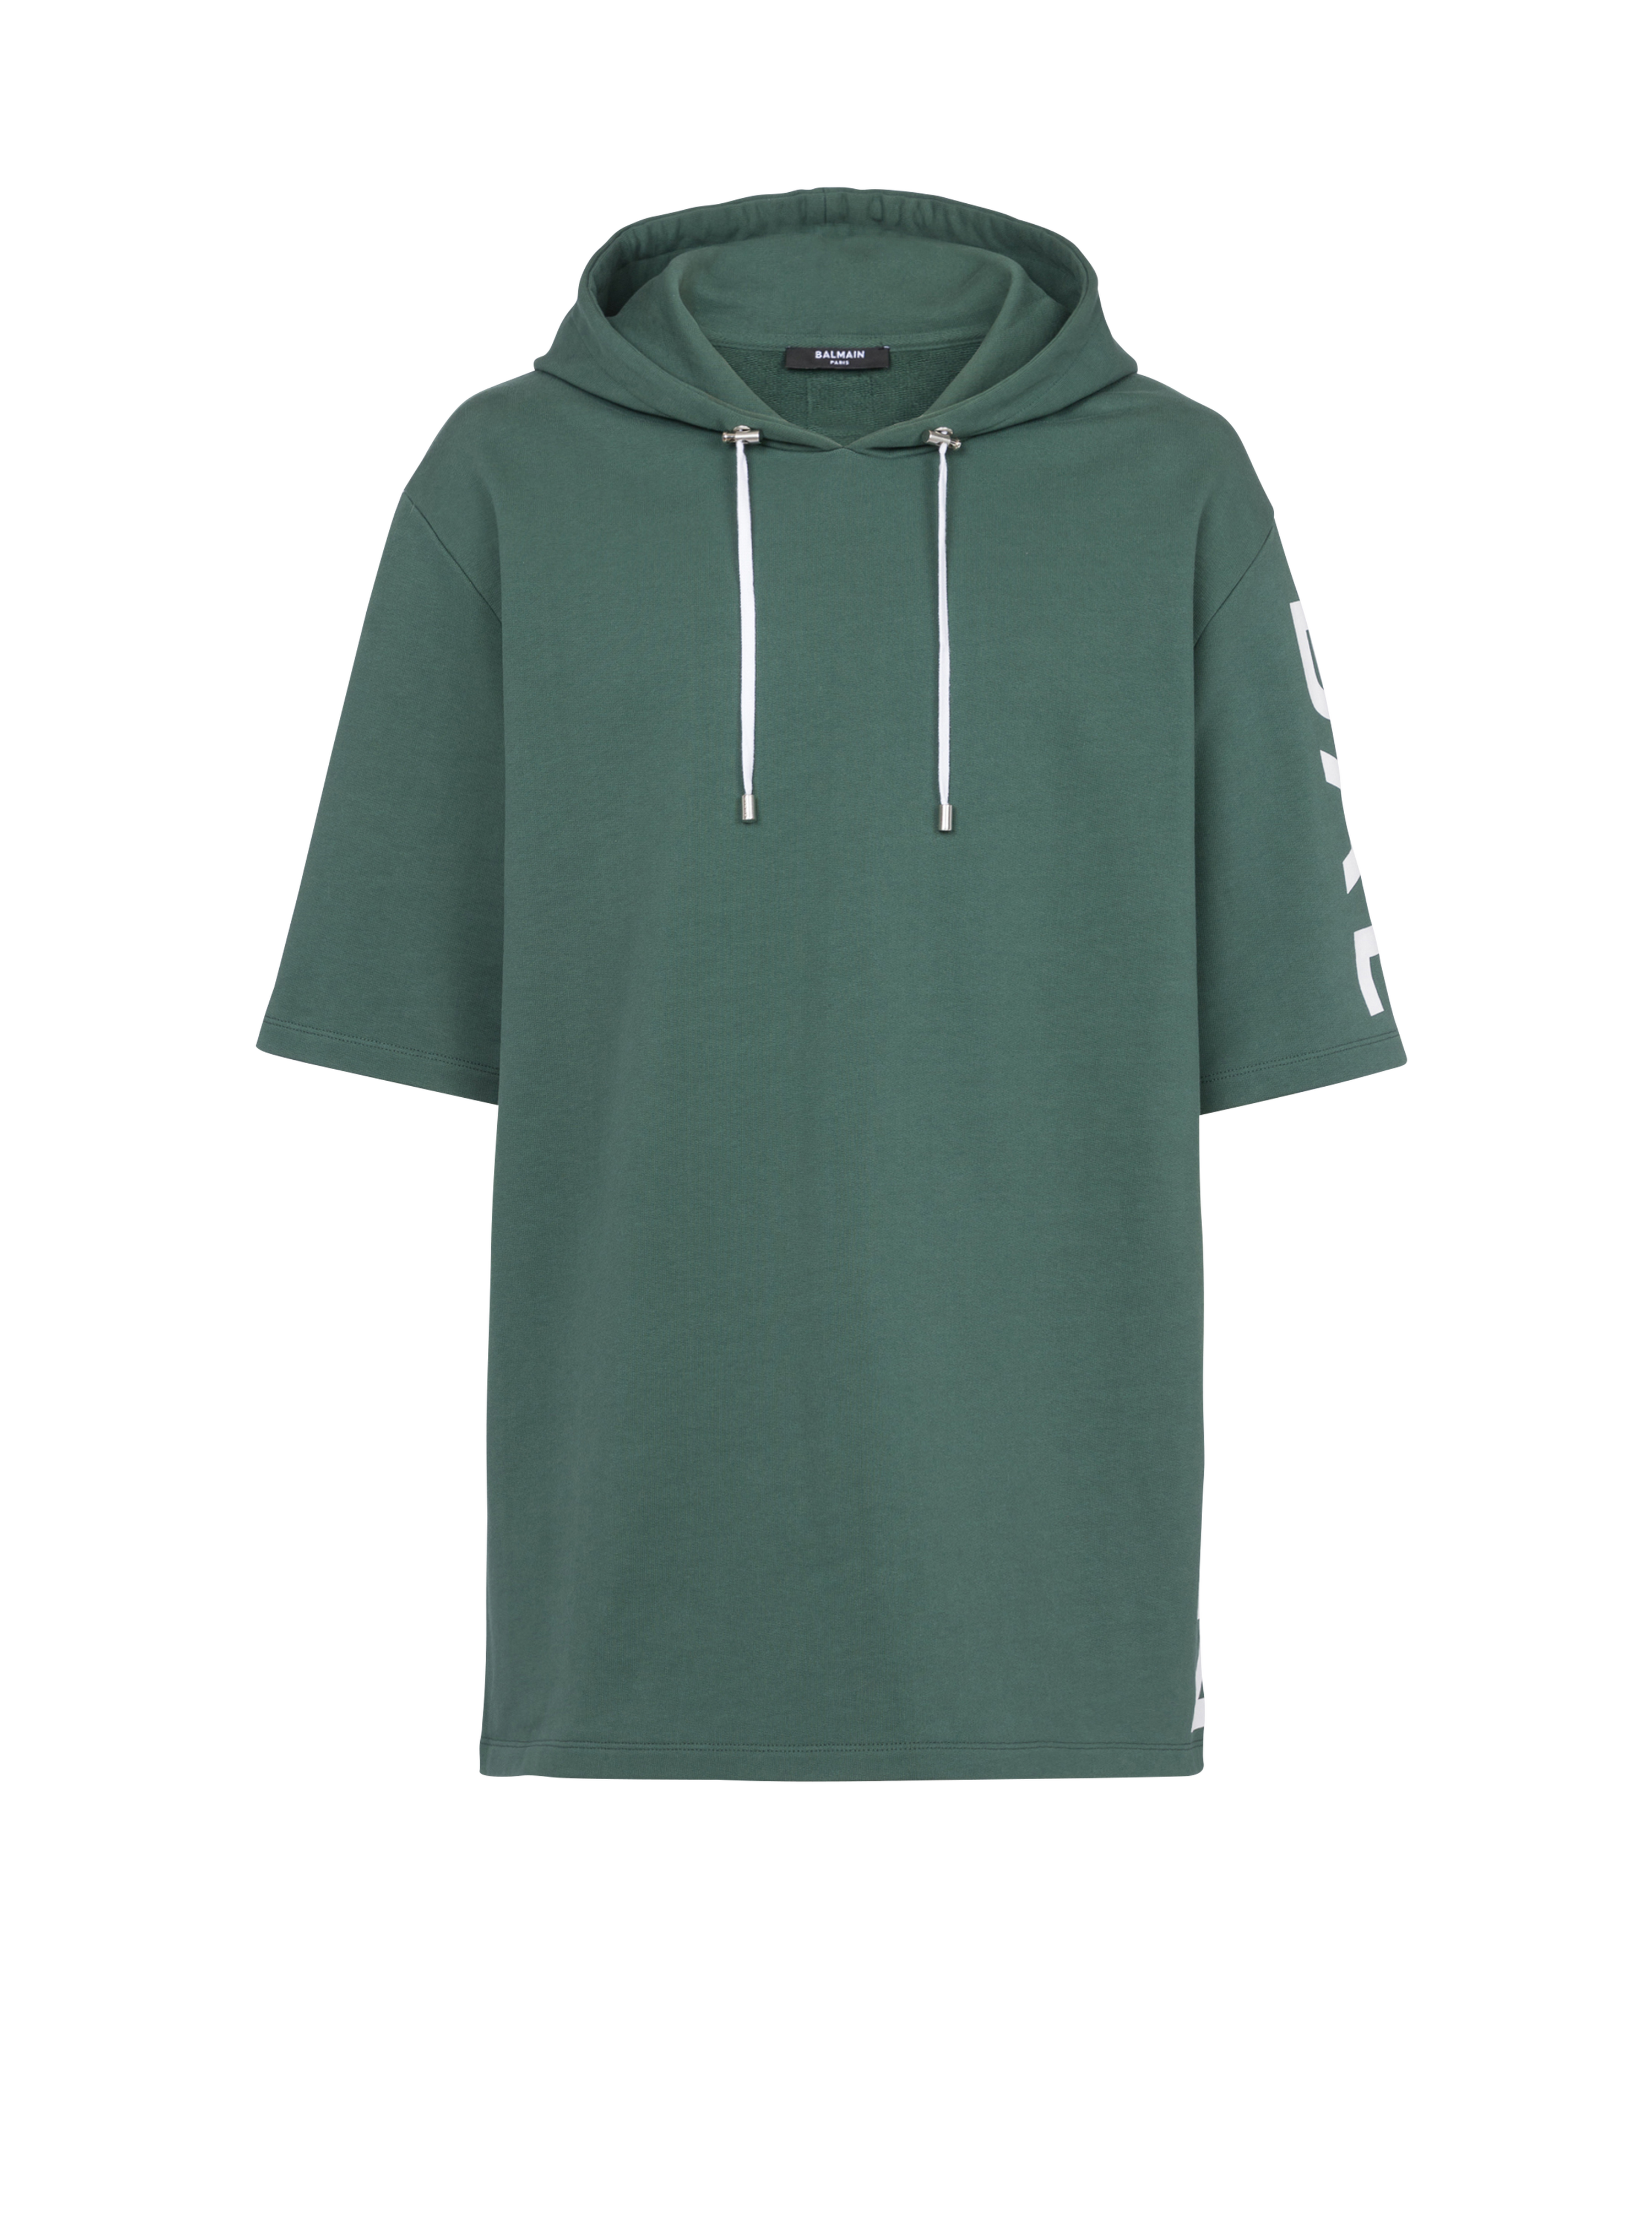 Sweat à capuche oversize en coton imprimé logo Balmain, vert